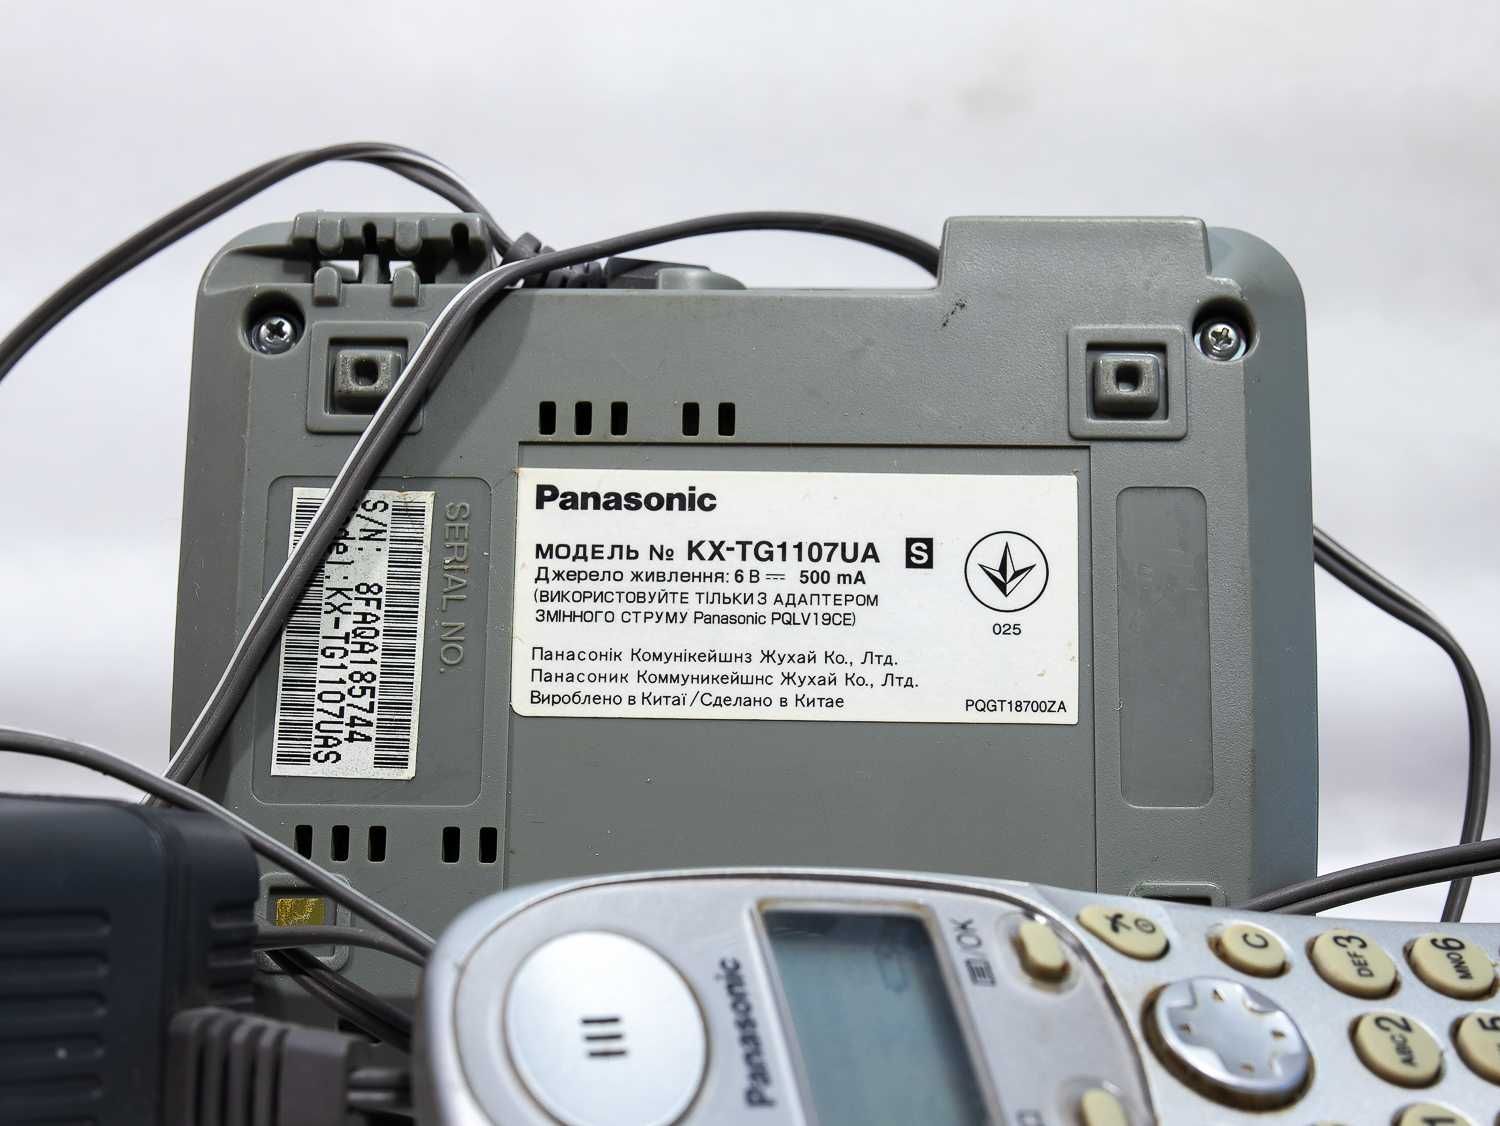 Телефоны KX-T2335 и KX-TG1107UA Panasonic